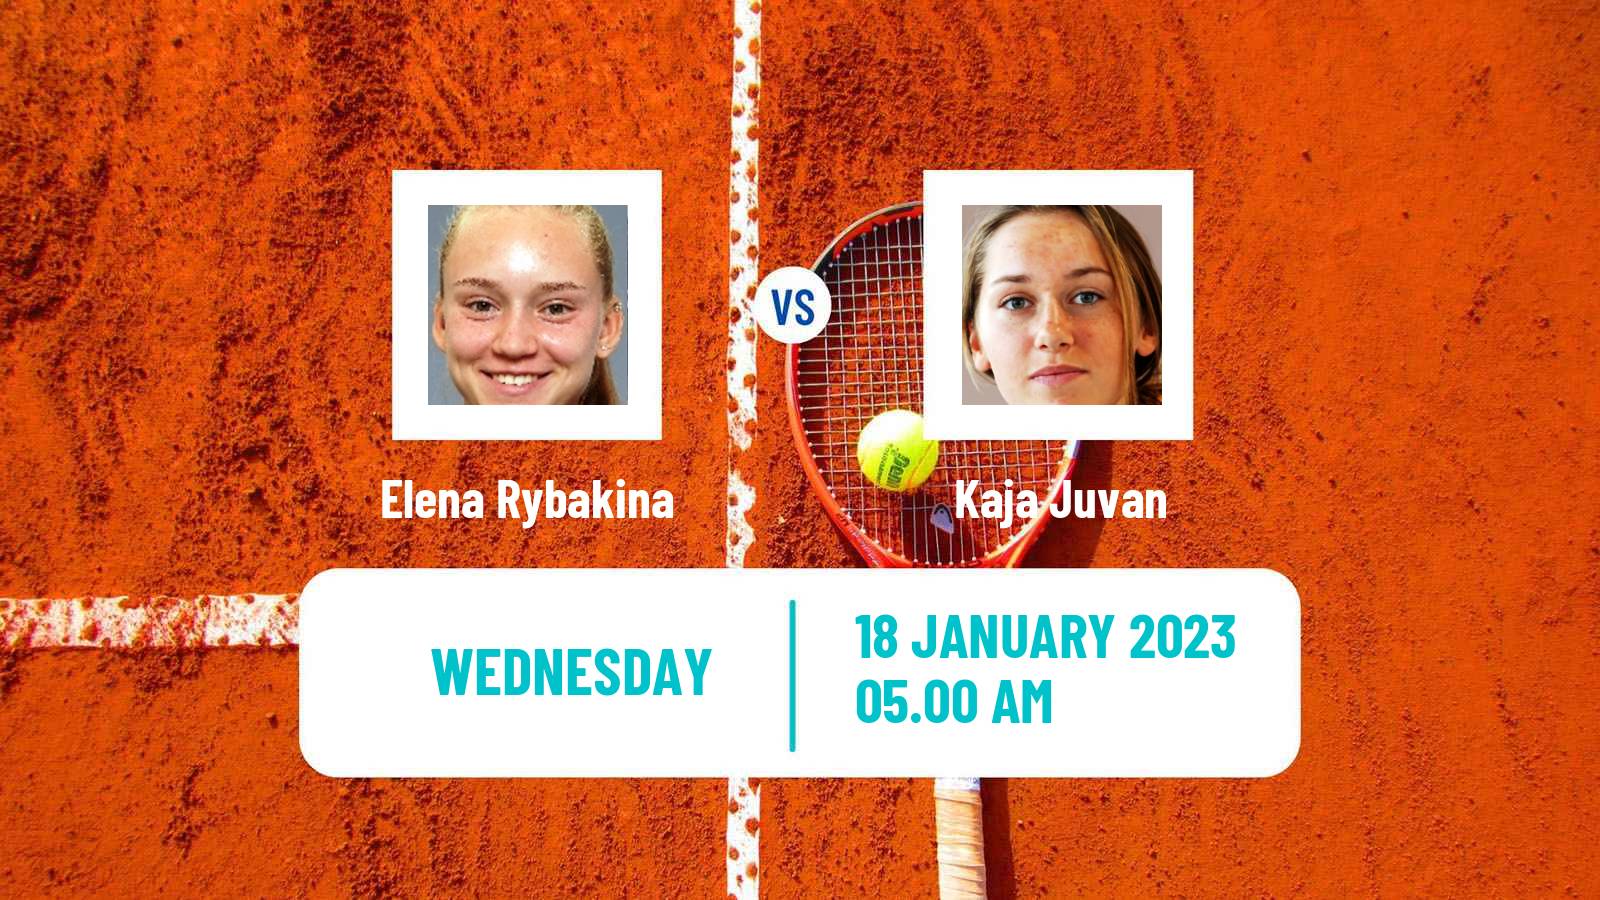 Tennis WTA Australian Open Elena Rybakina - Kaja Juvan